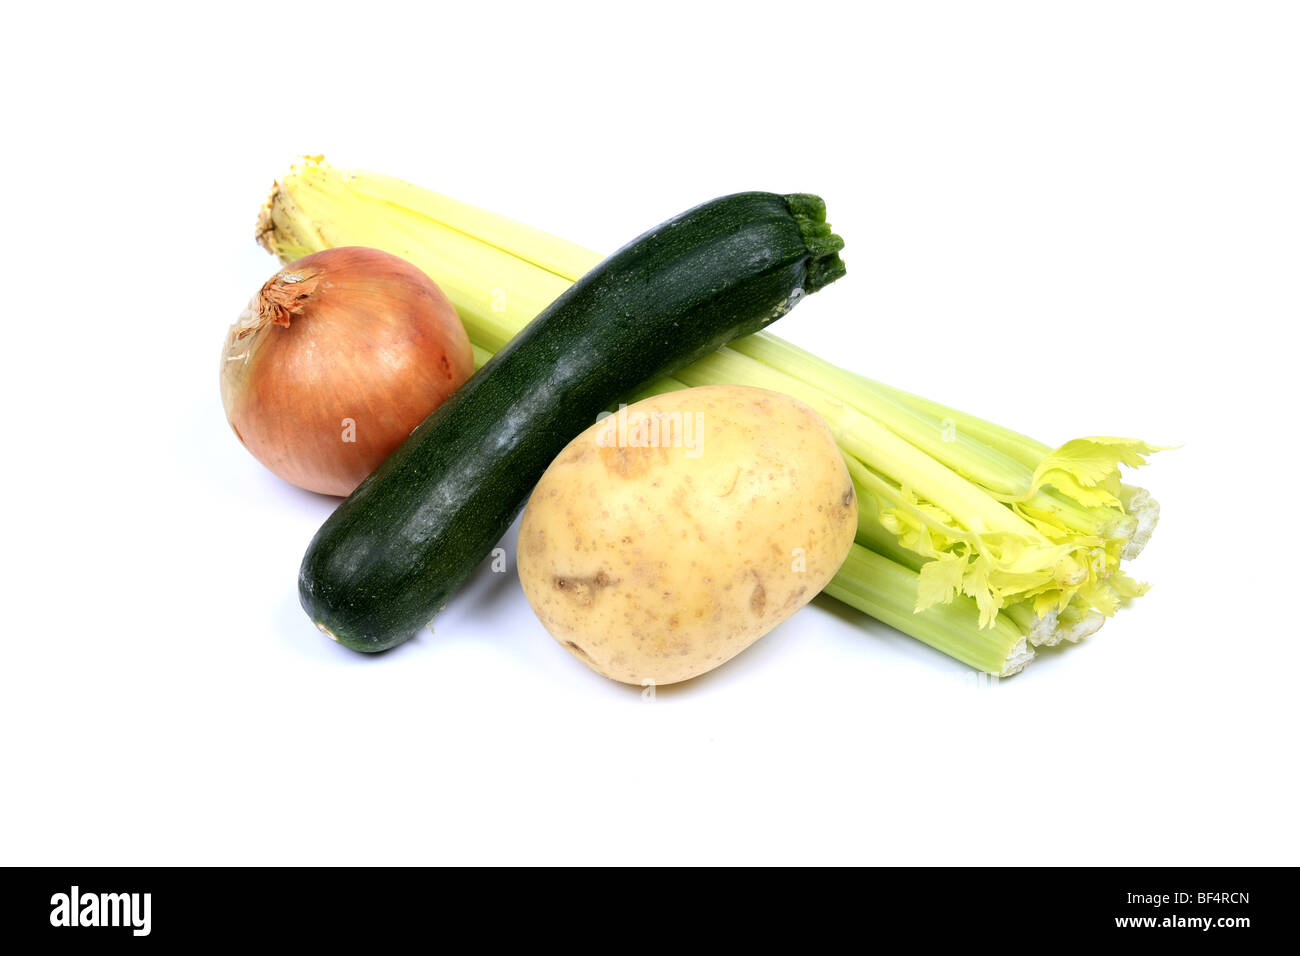 Verdure ora disponibile nei nostri negozi - onion di patate e sedano Zucchine Zucchine o Foto Stock